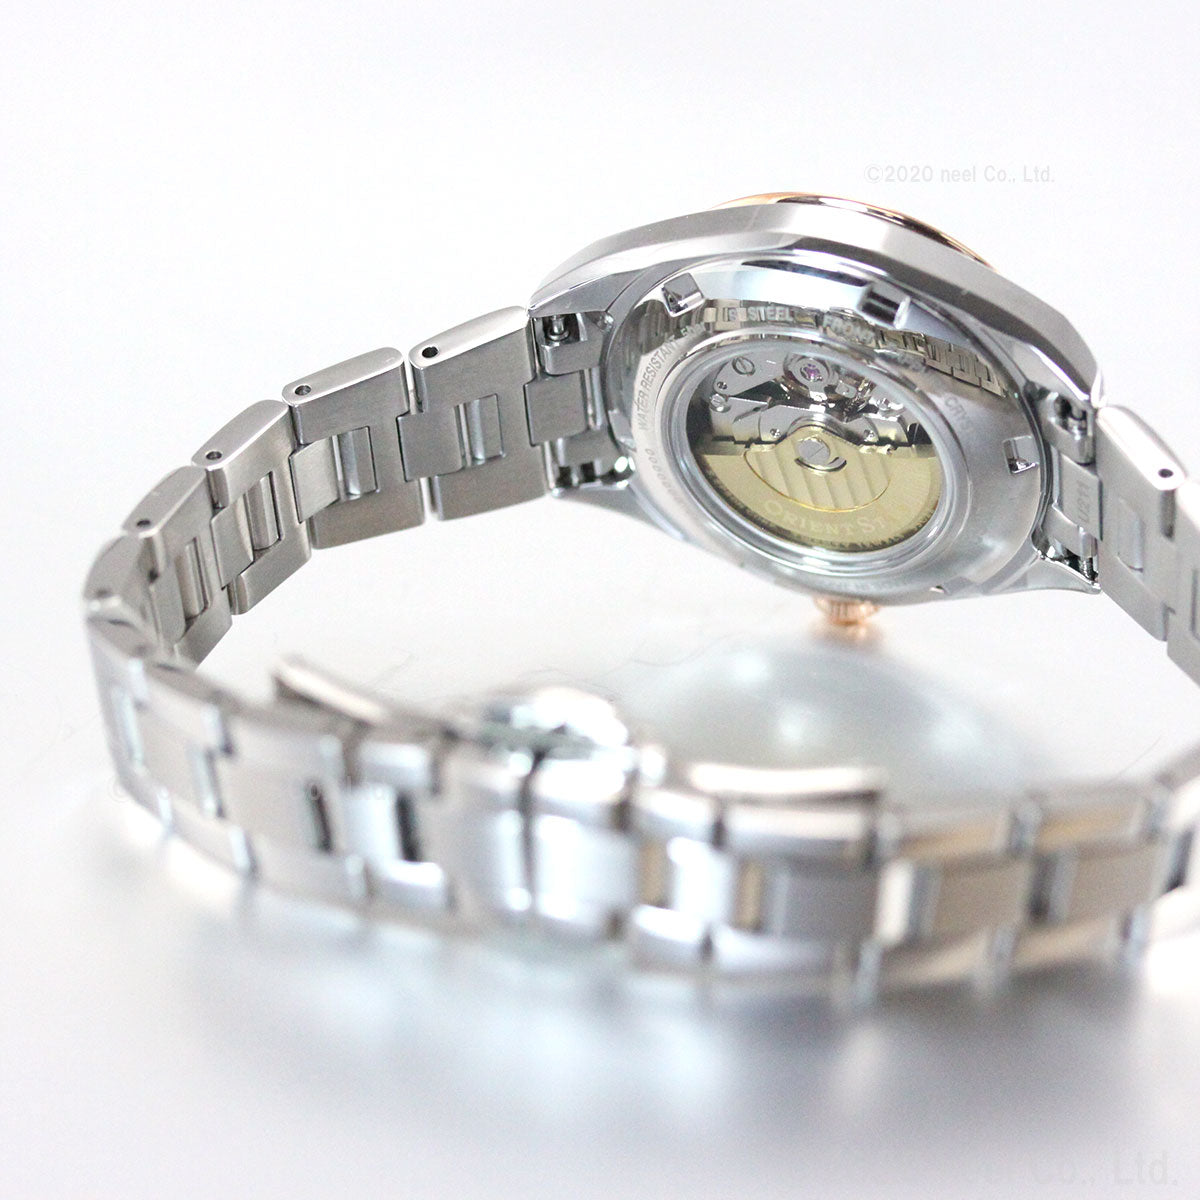 オリエントスター ORIENT STAR 腕時計 レディース 自動巻き 機械式 コンテンポラリー CONTEMPORALY セミスケルトン RK-ND0101S